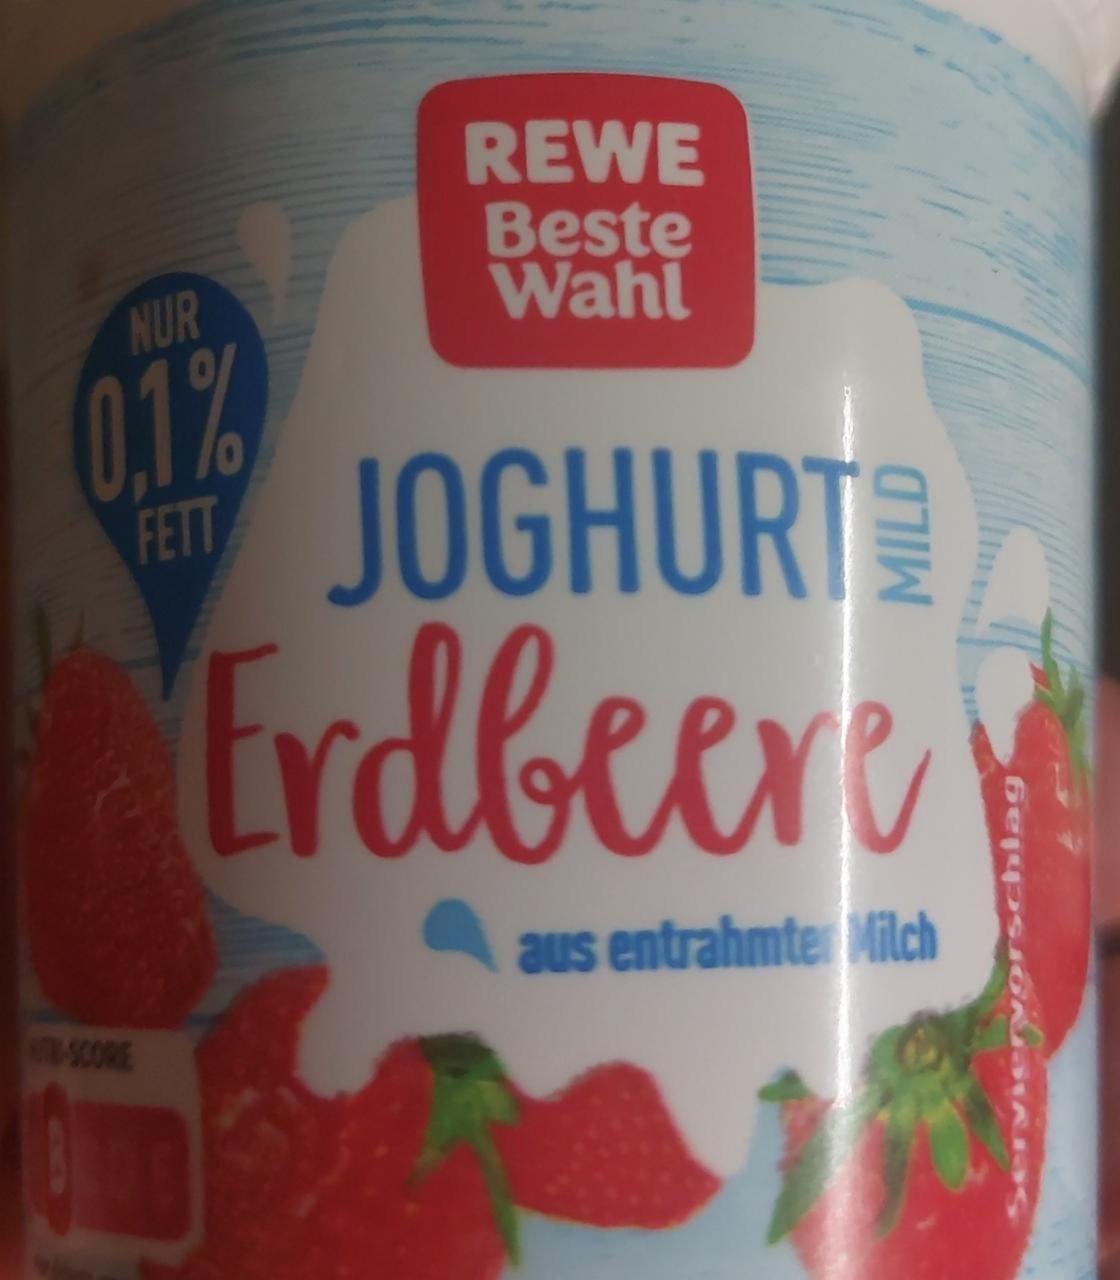 Fotografie - Jogurt mild erdbeere Rewe